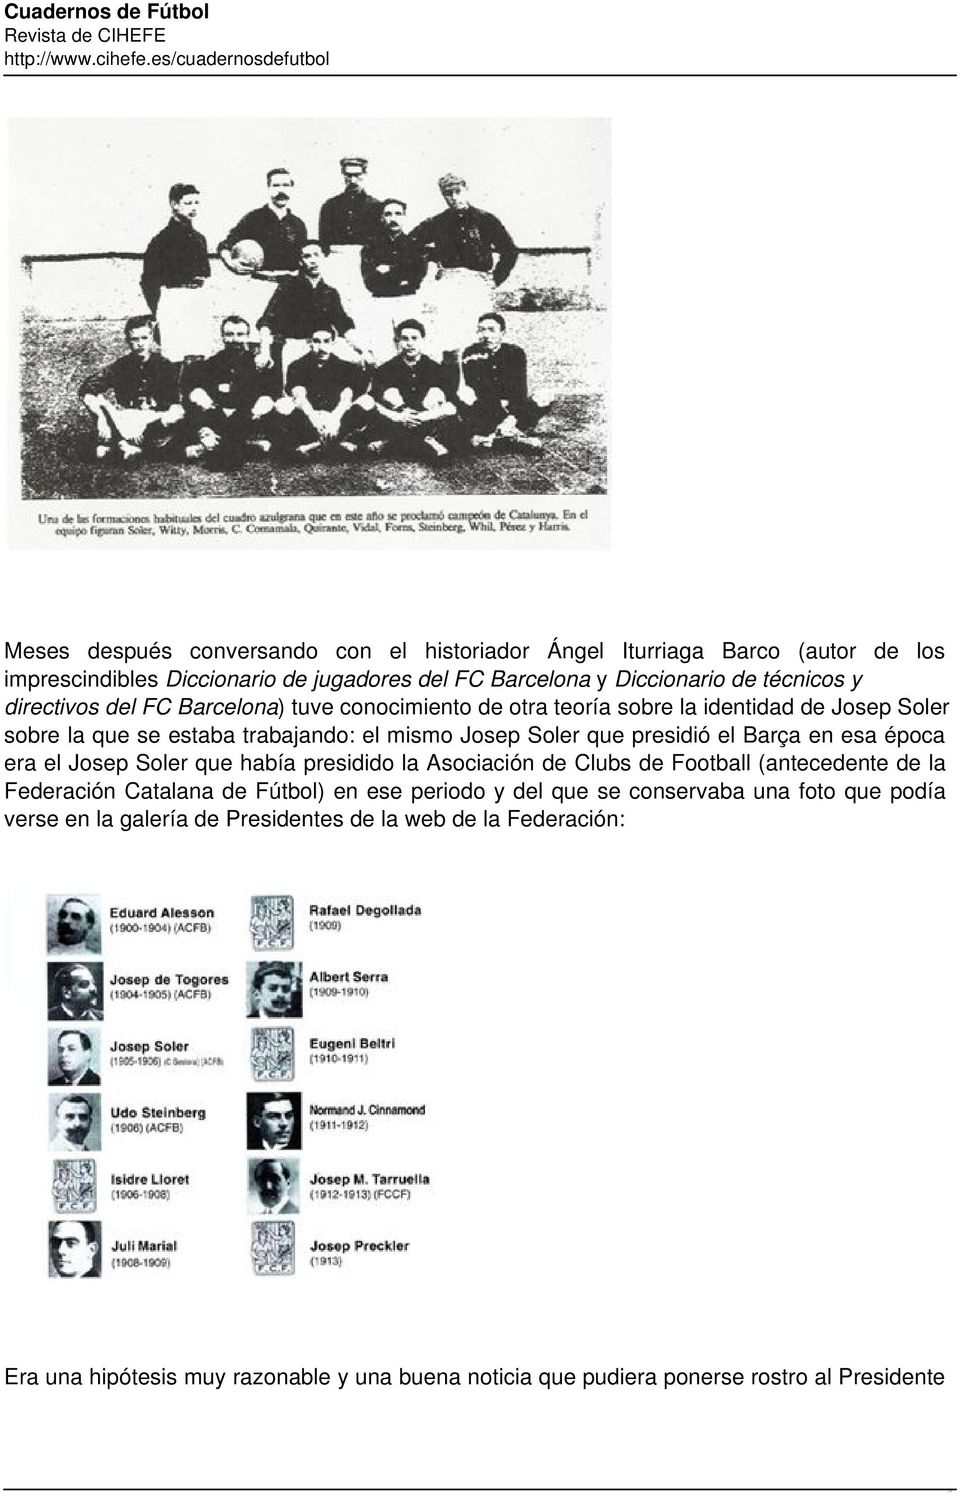 en esa época era el Josep Soler que había presidido la Asociación de Clubs de Football (antecedente de la Federación Catalana de Fútbol) en ese periodo y del que se